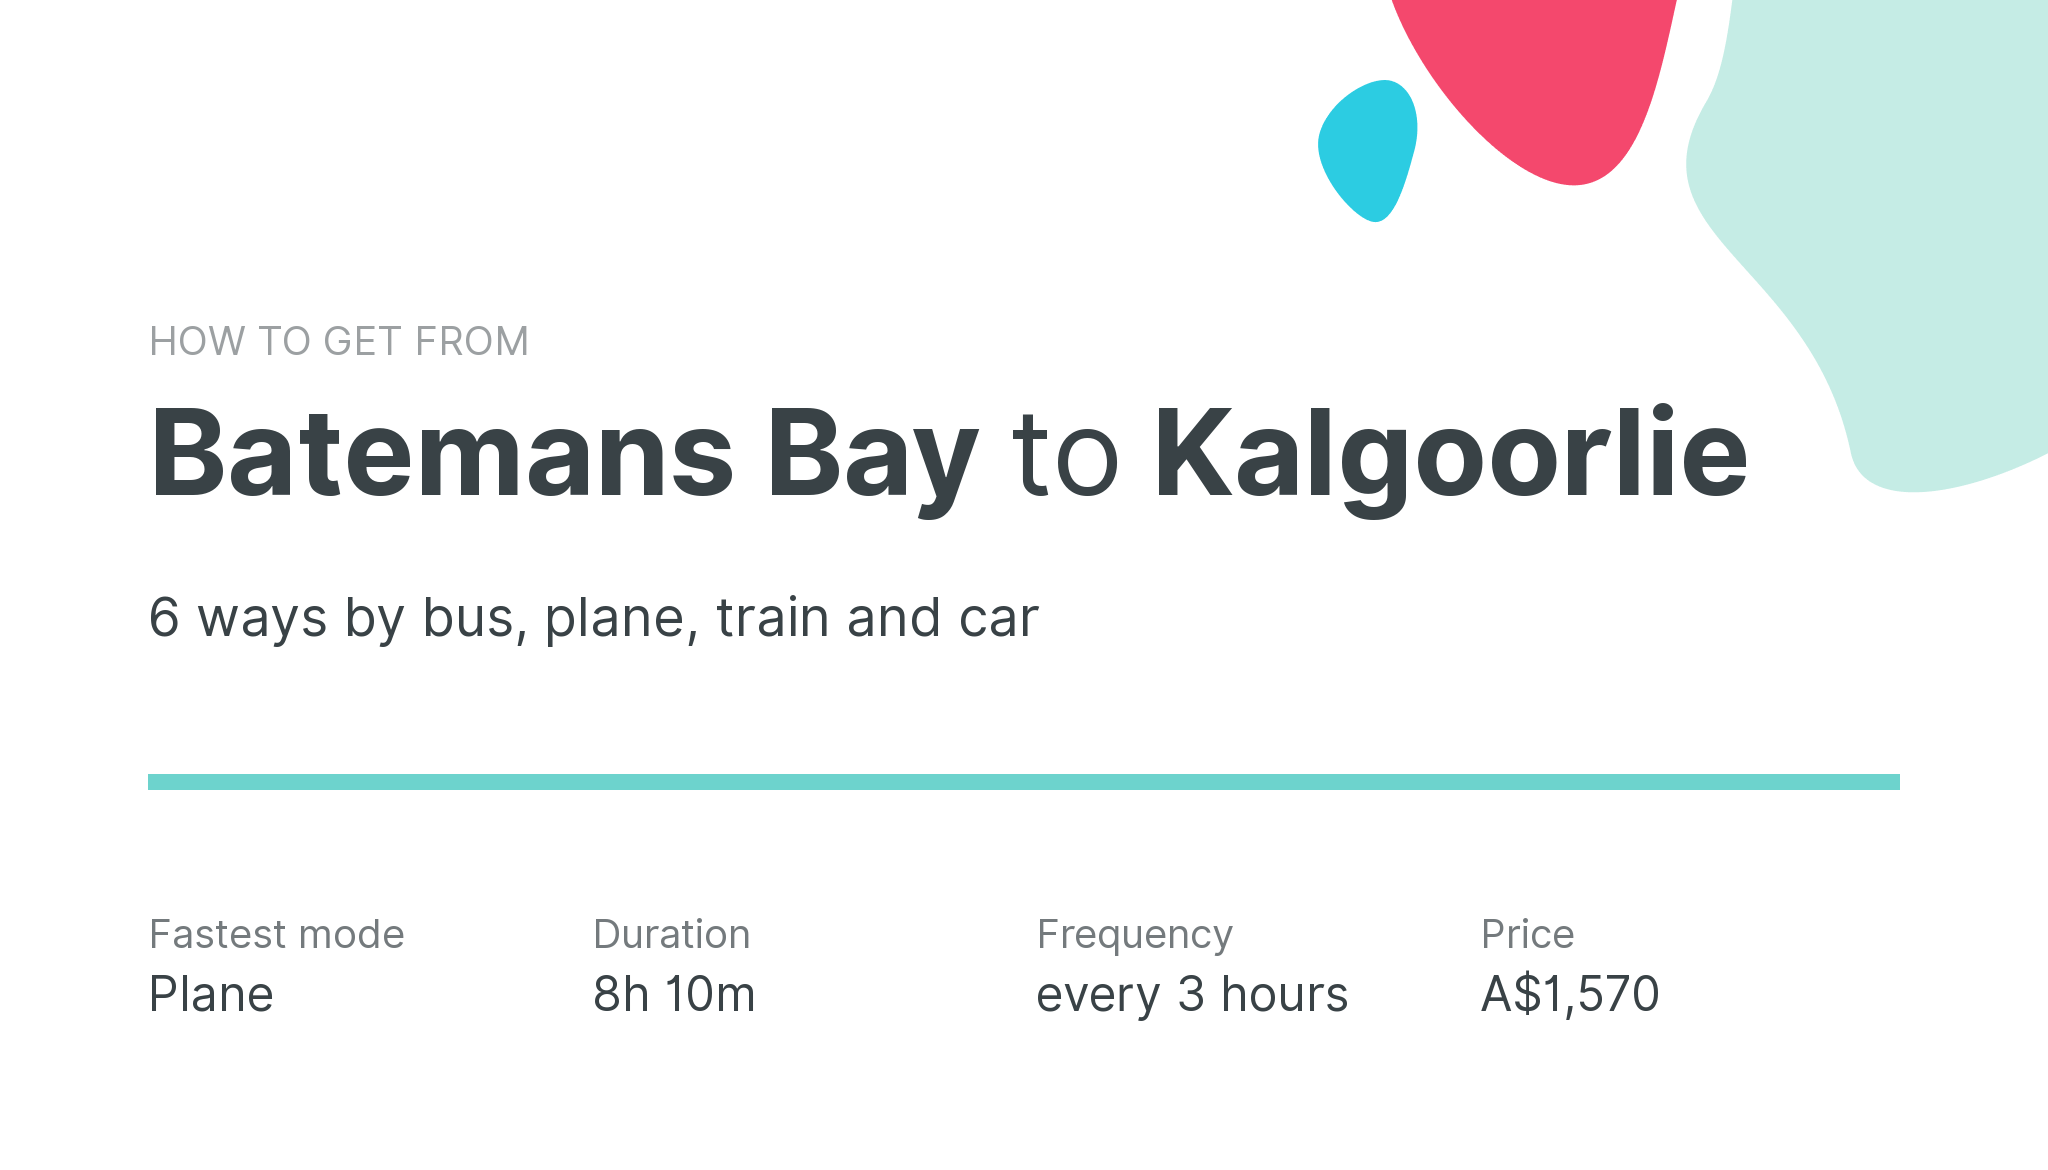 How do I get from Batemans Bay to Kalgoorlie